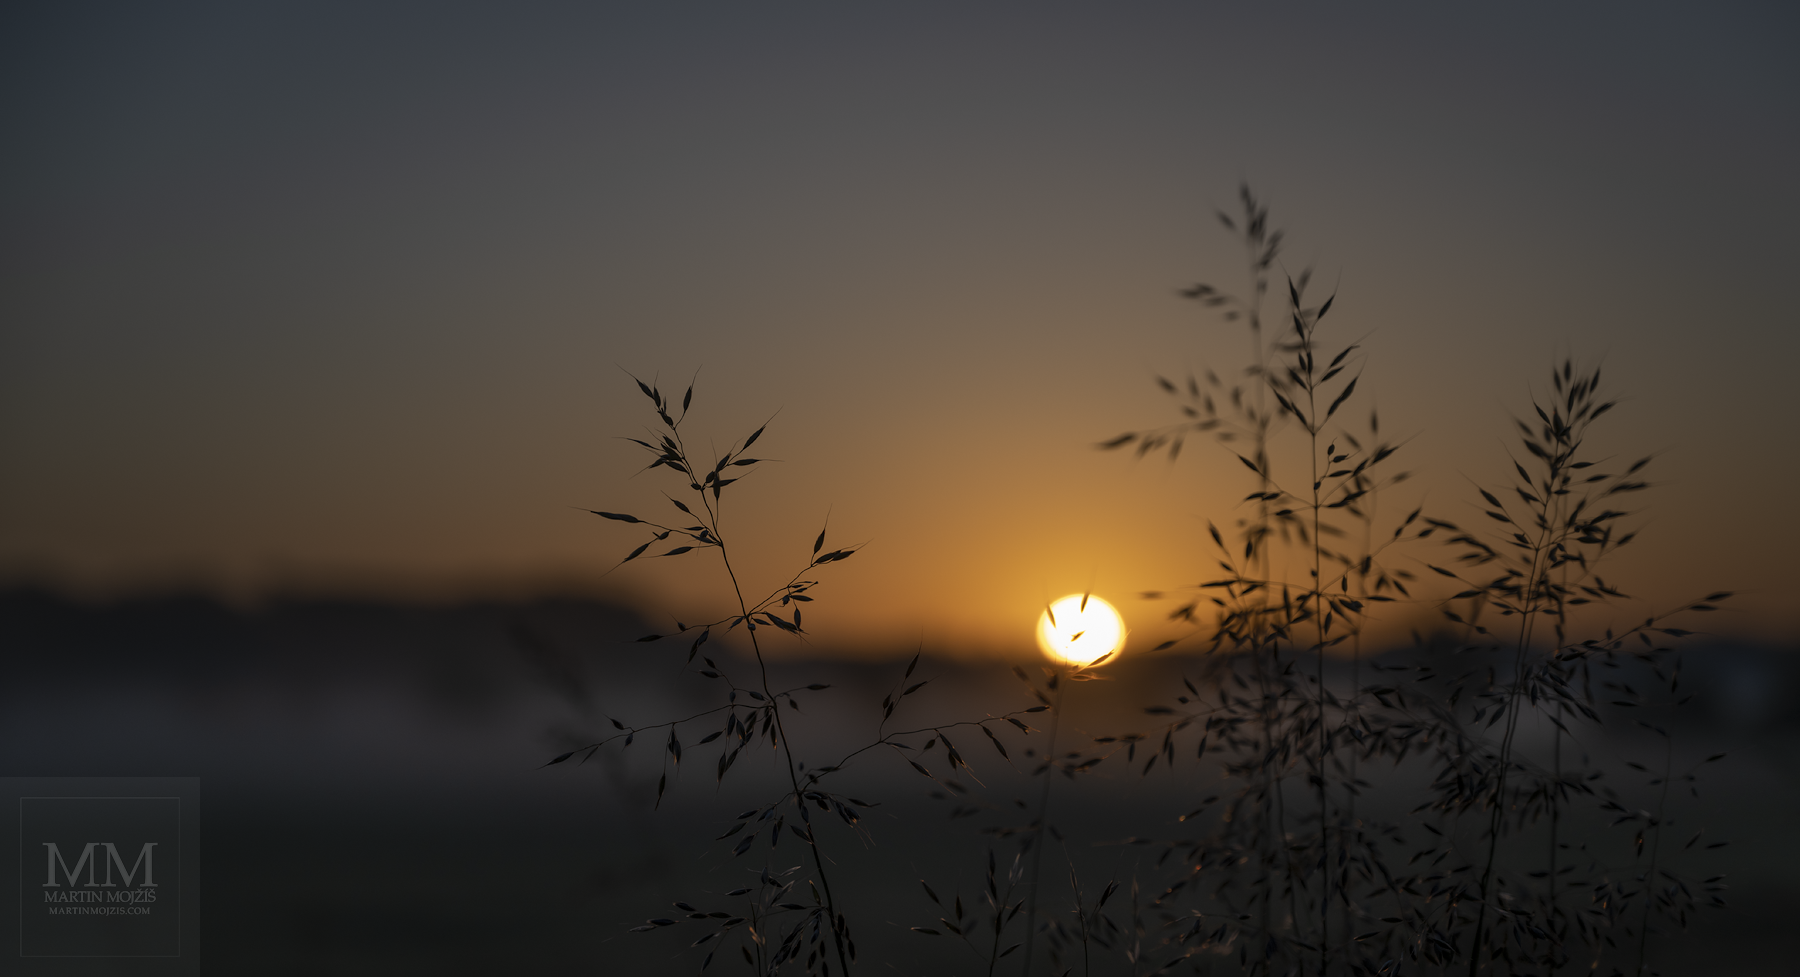 Stébla trávy, v pozadí vycházející Slunce. Velkoformátová umělecká fotografie krajiny s názvem TICHO NOVÉHO DNE. Fotograf Martin Mojžíš.